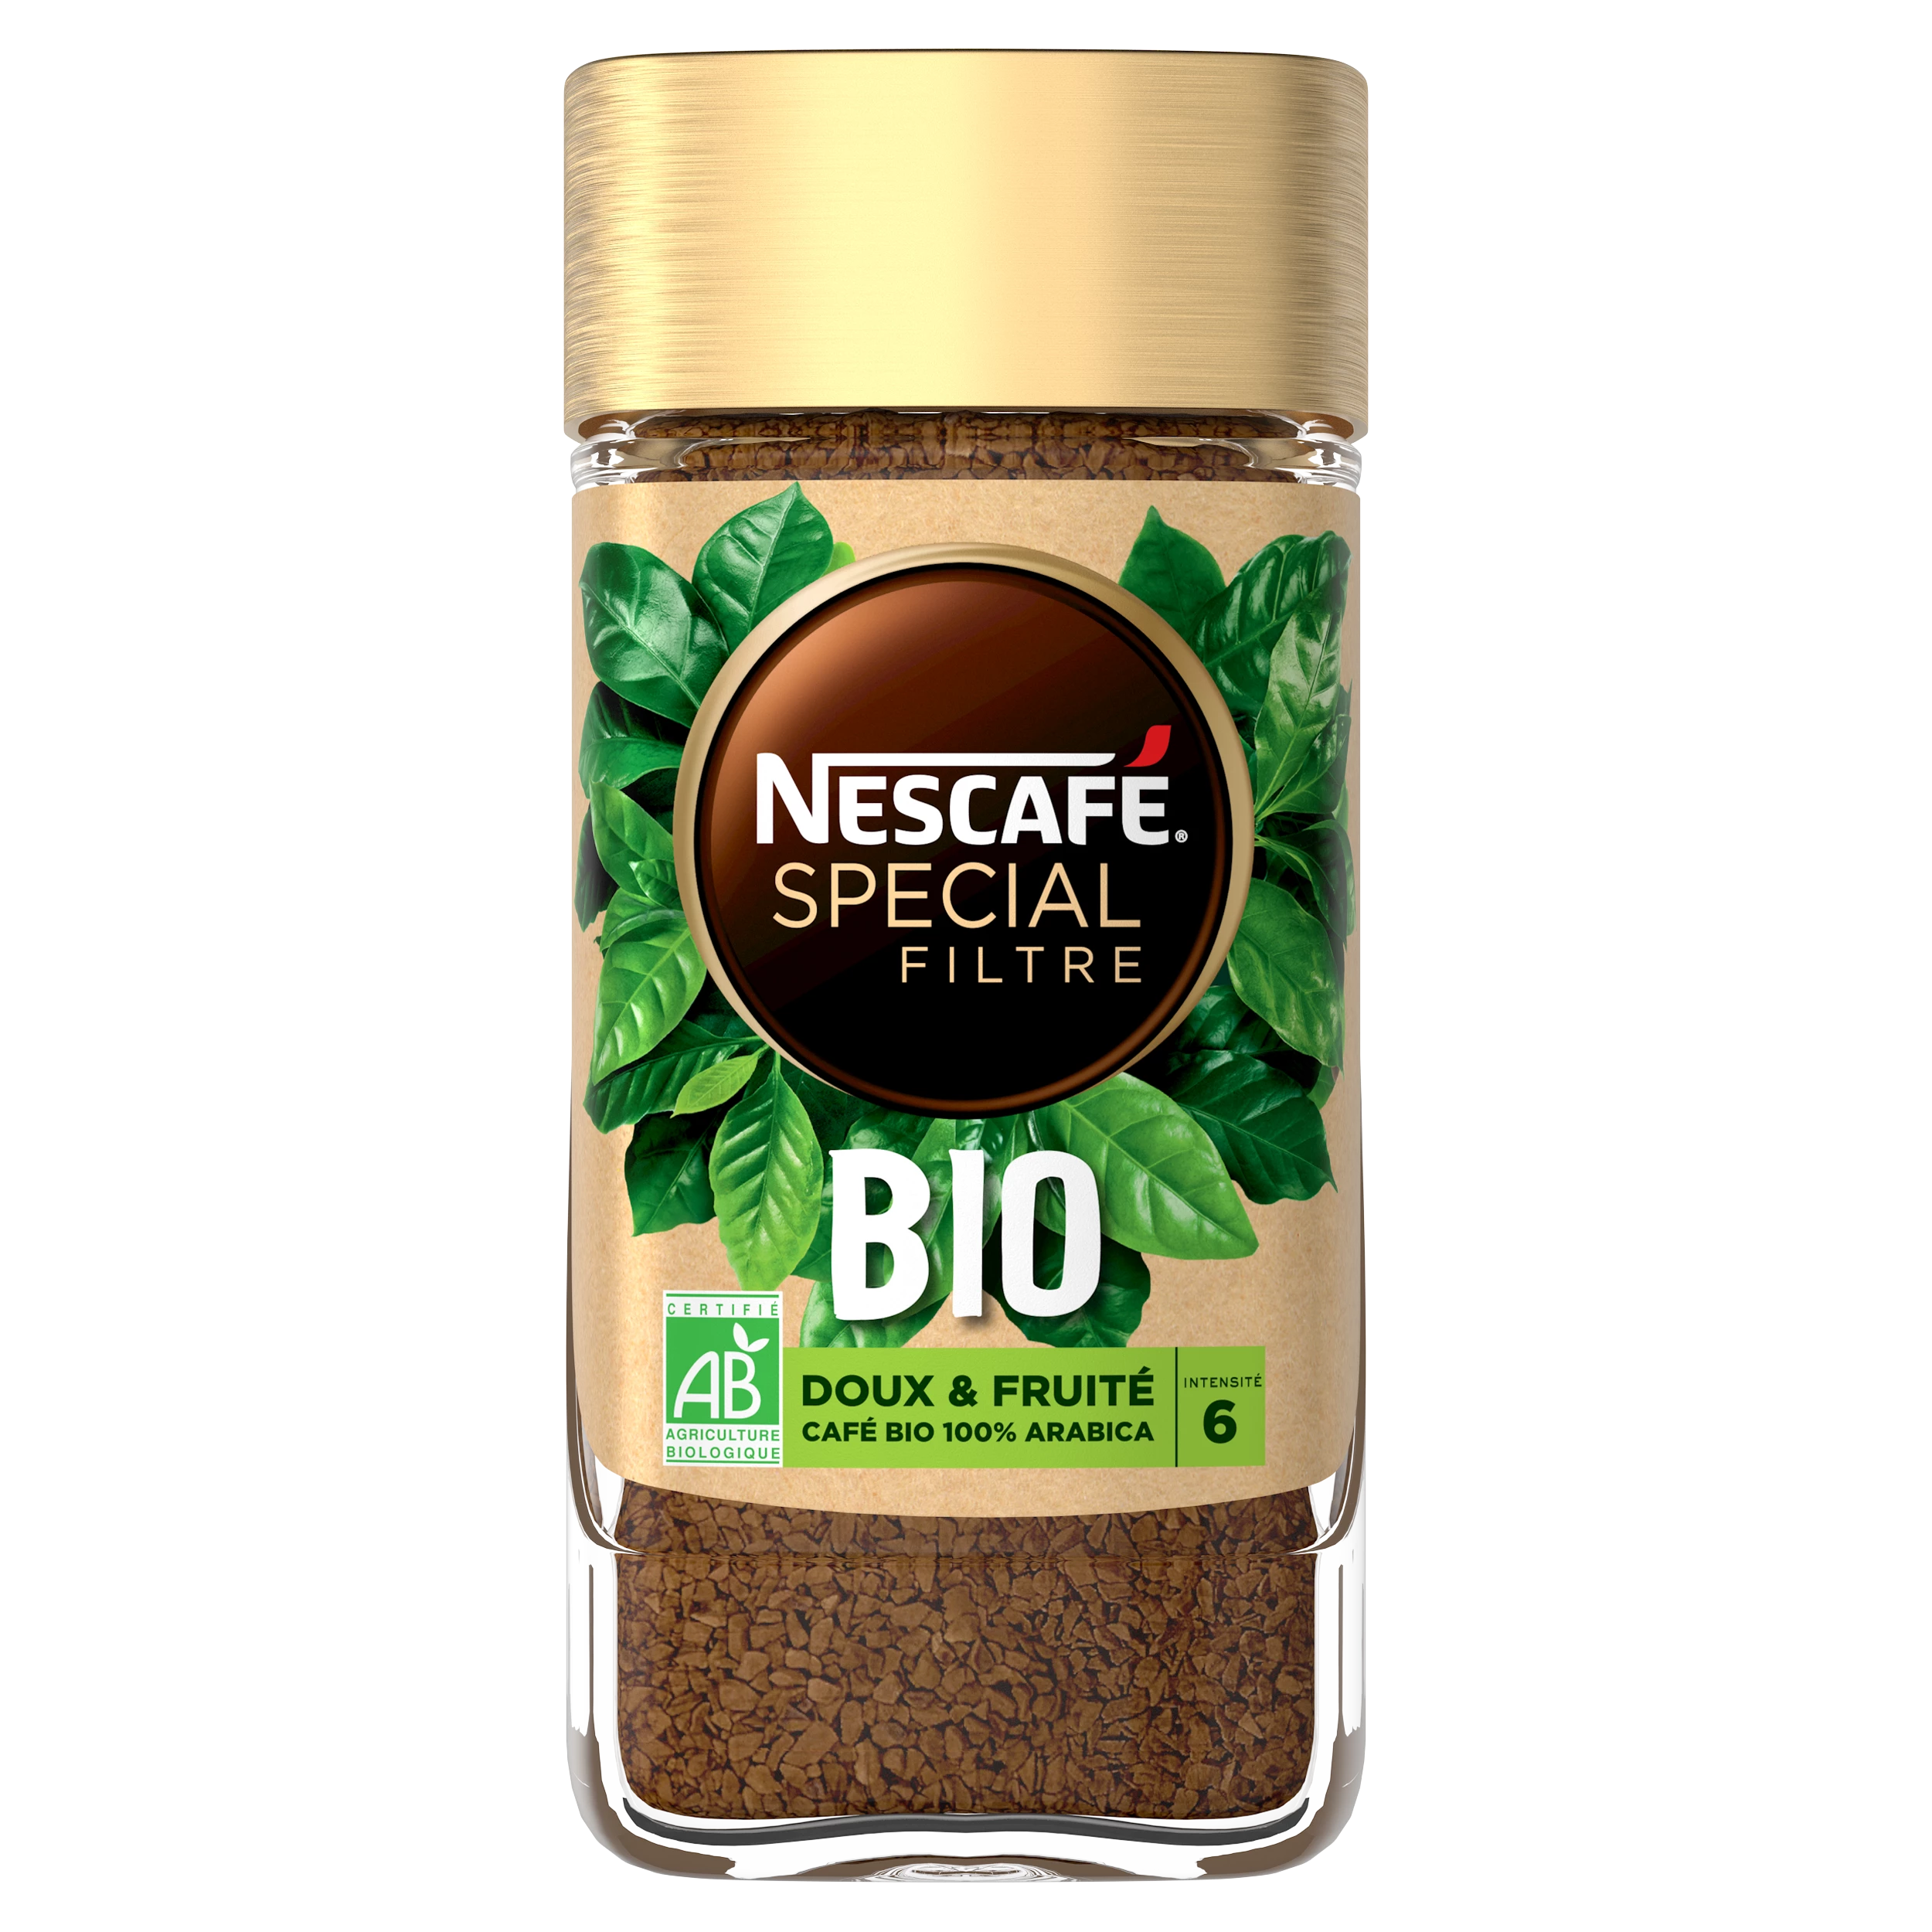 Nescafe Special Filtre Bio 90g